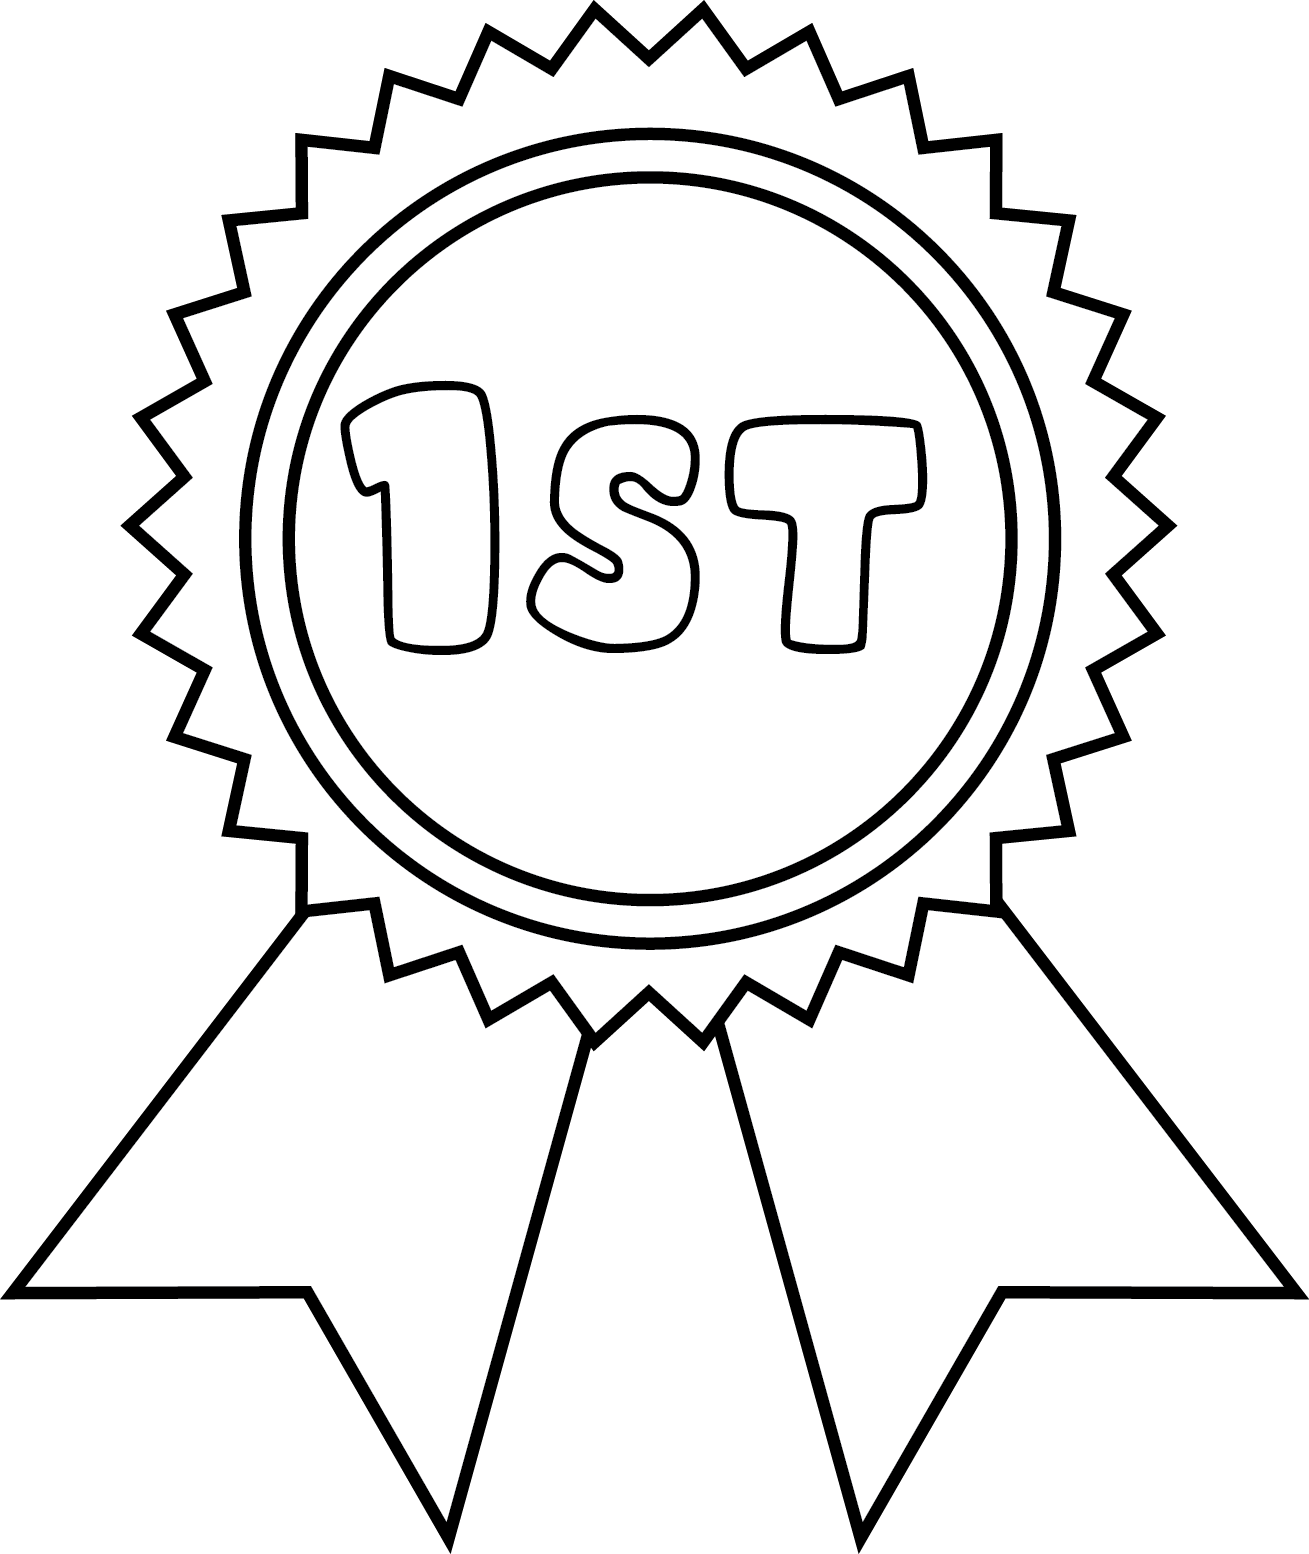 1st' Rosette Medal Digital Stamp - ClipArt Best - ClipArt Best